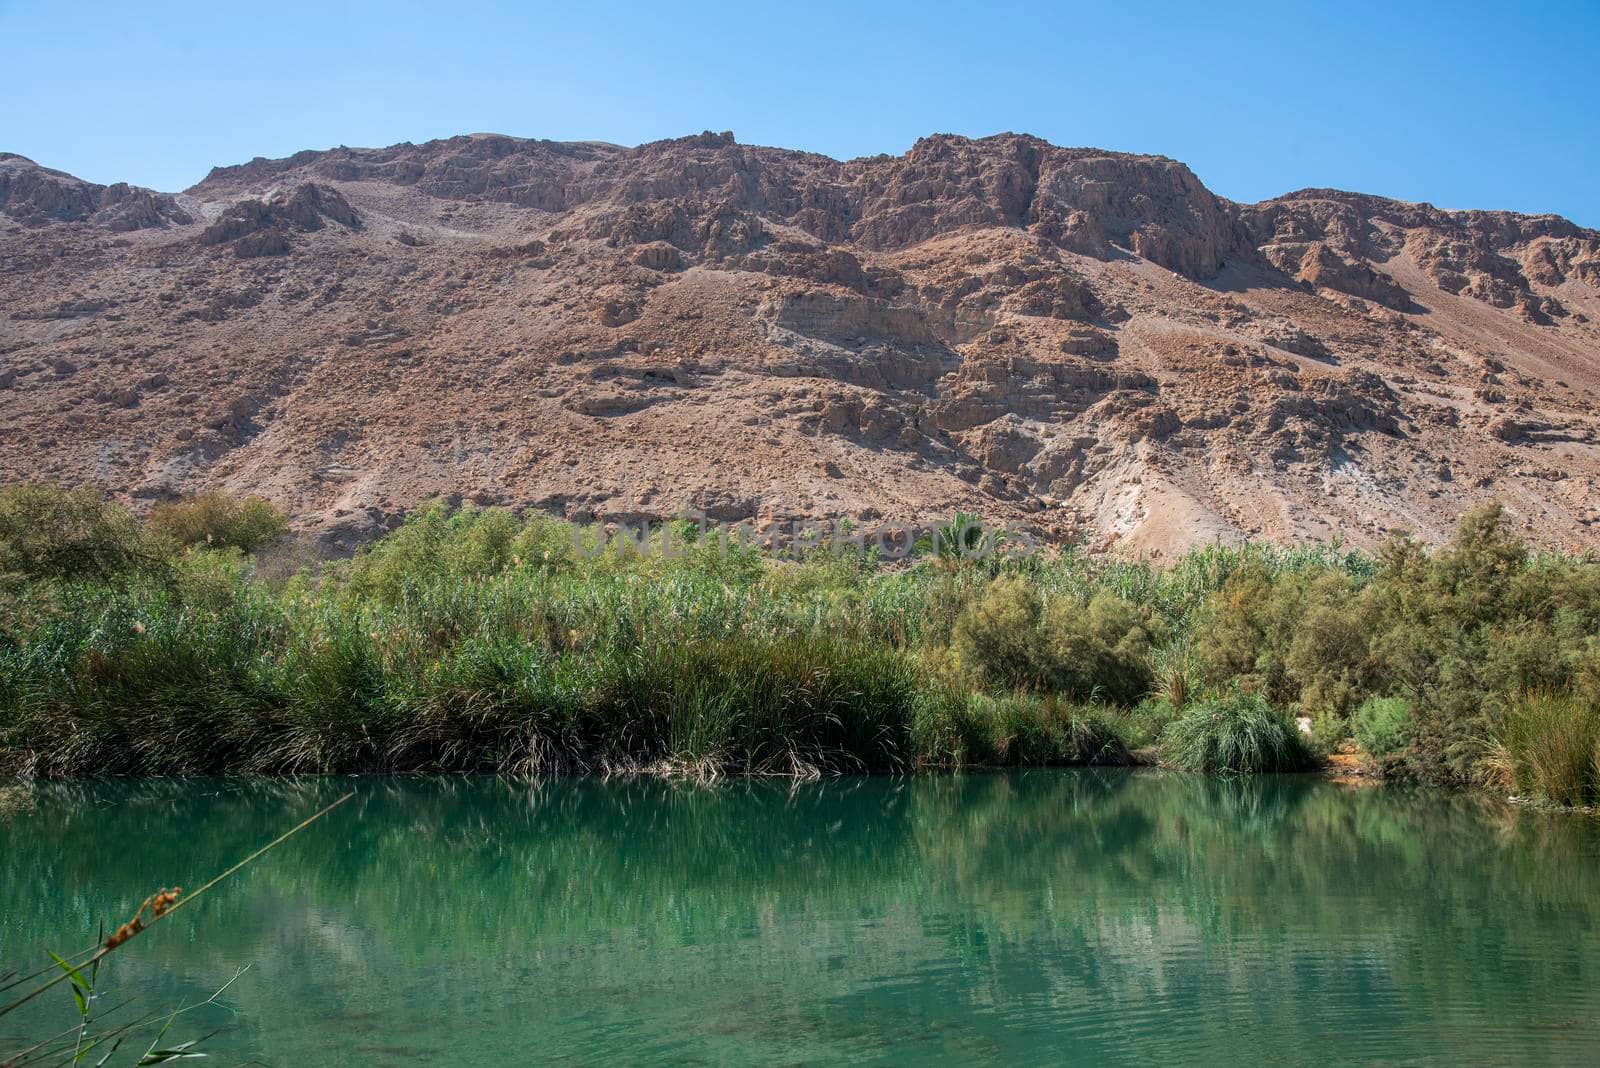 An oasis near the Dead Sea. A tropical nature reserve in the desert. Einot Tsukim, Ein Feshkha by avirozen